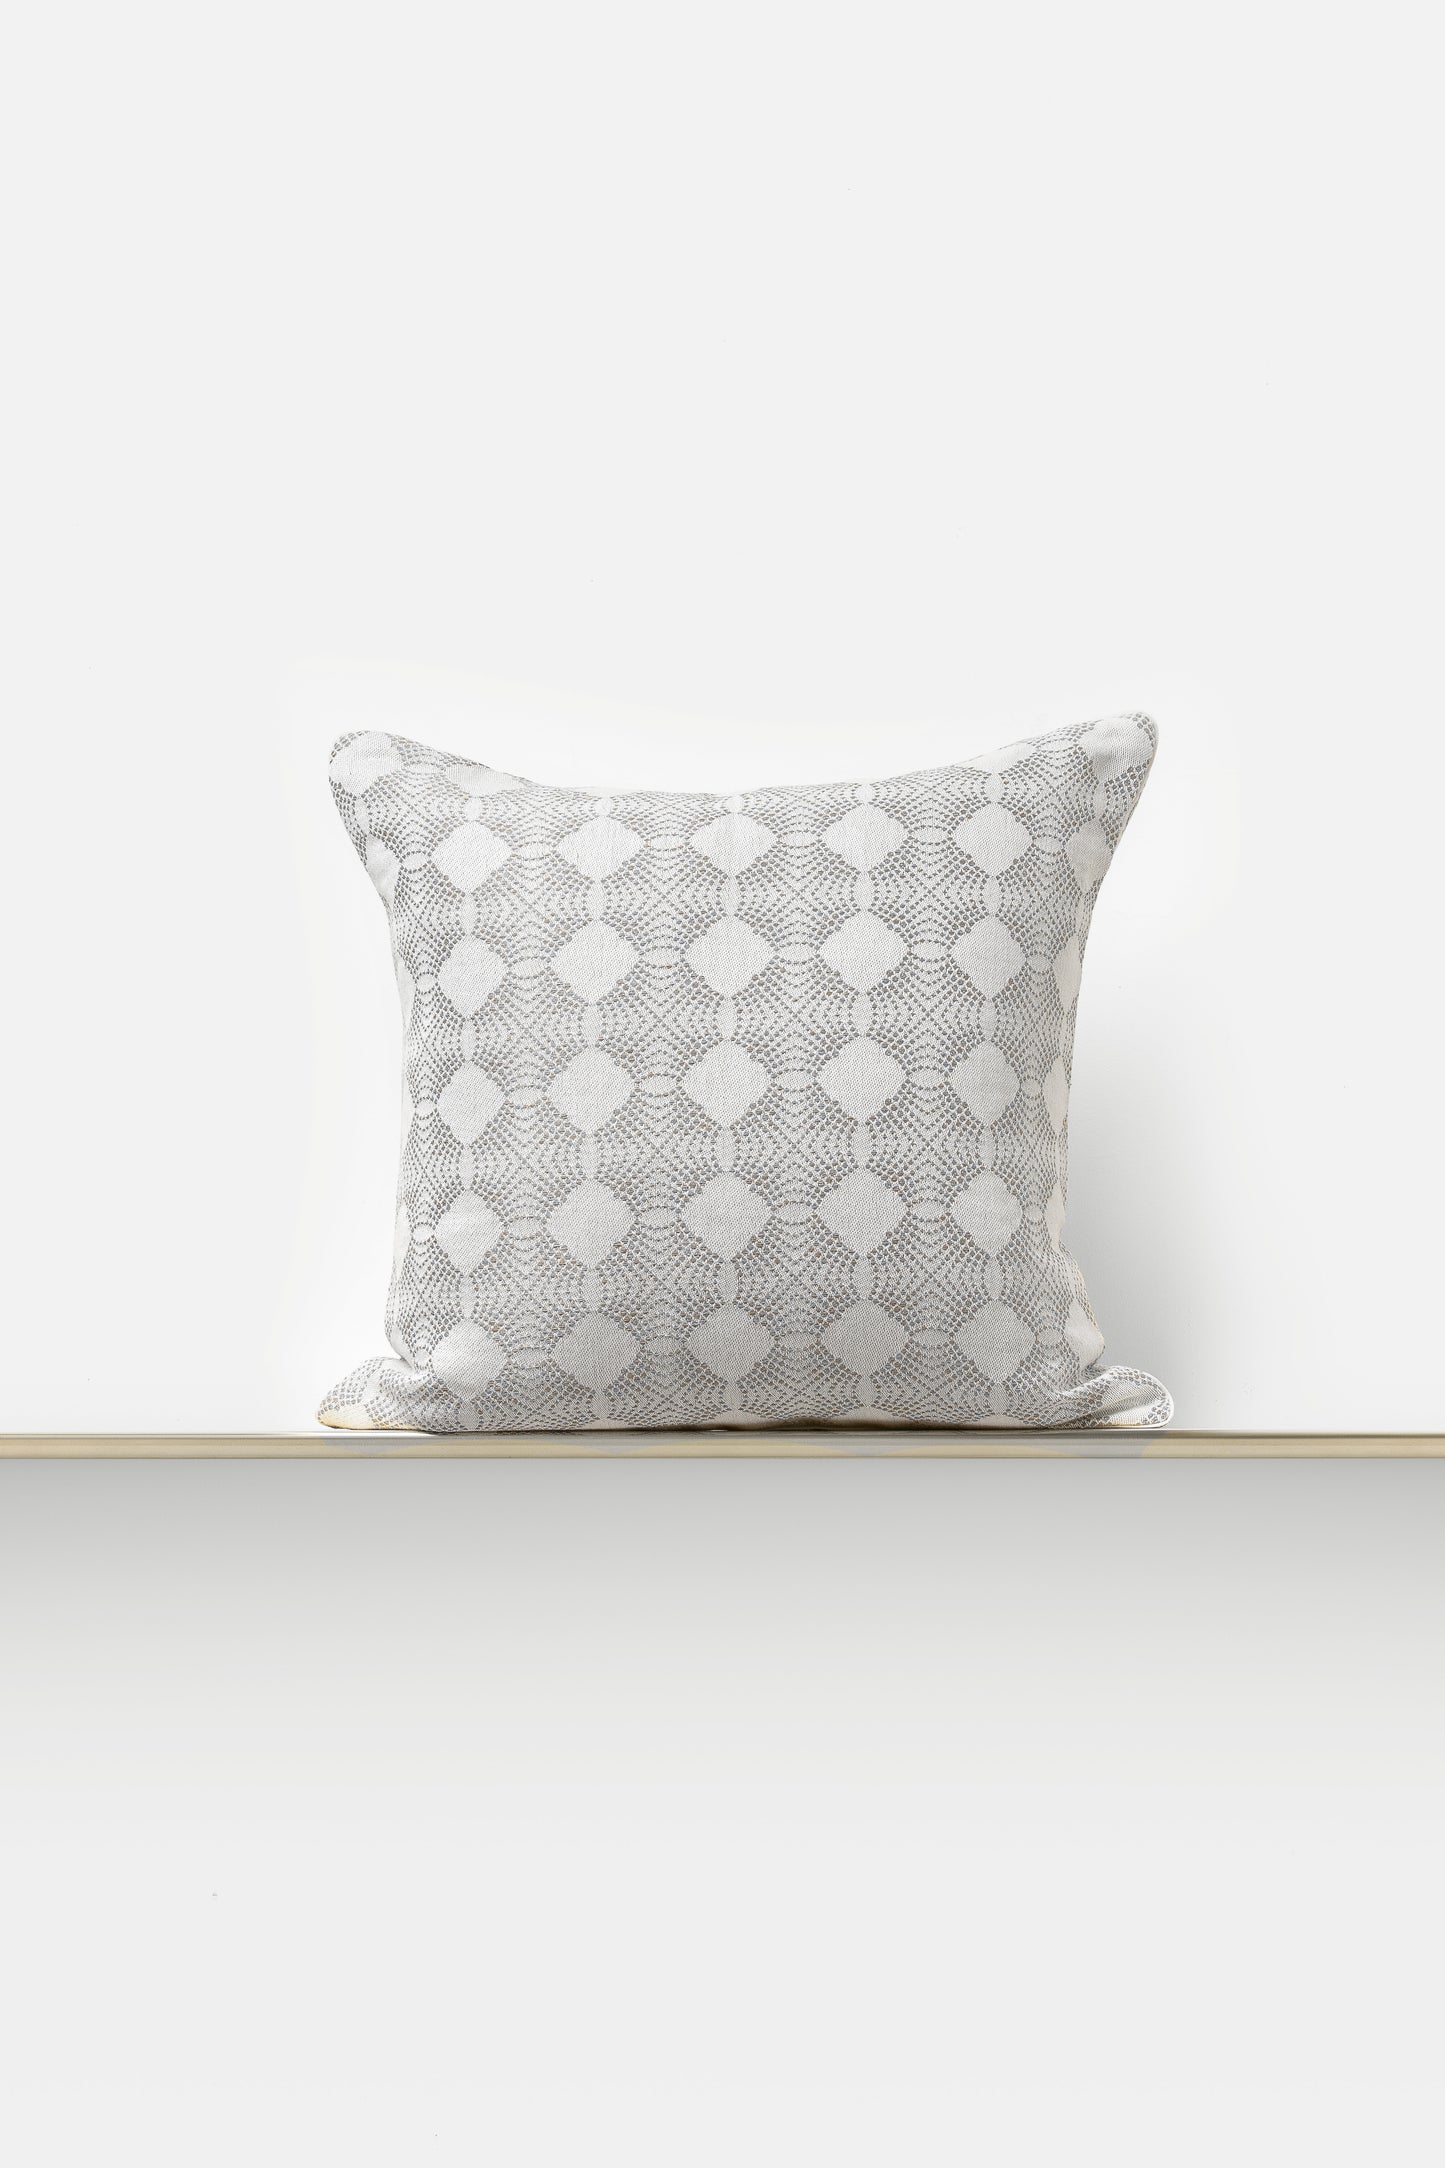 "Aster" cushion in Piombo Grey